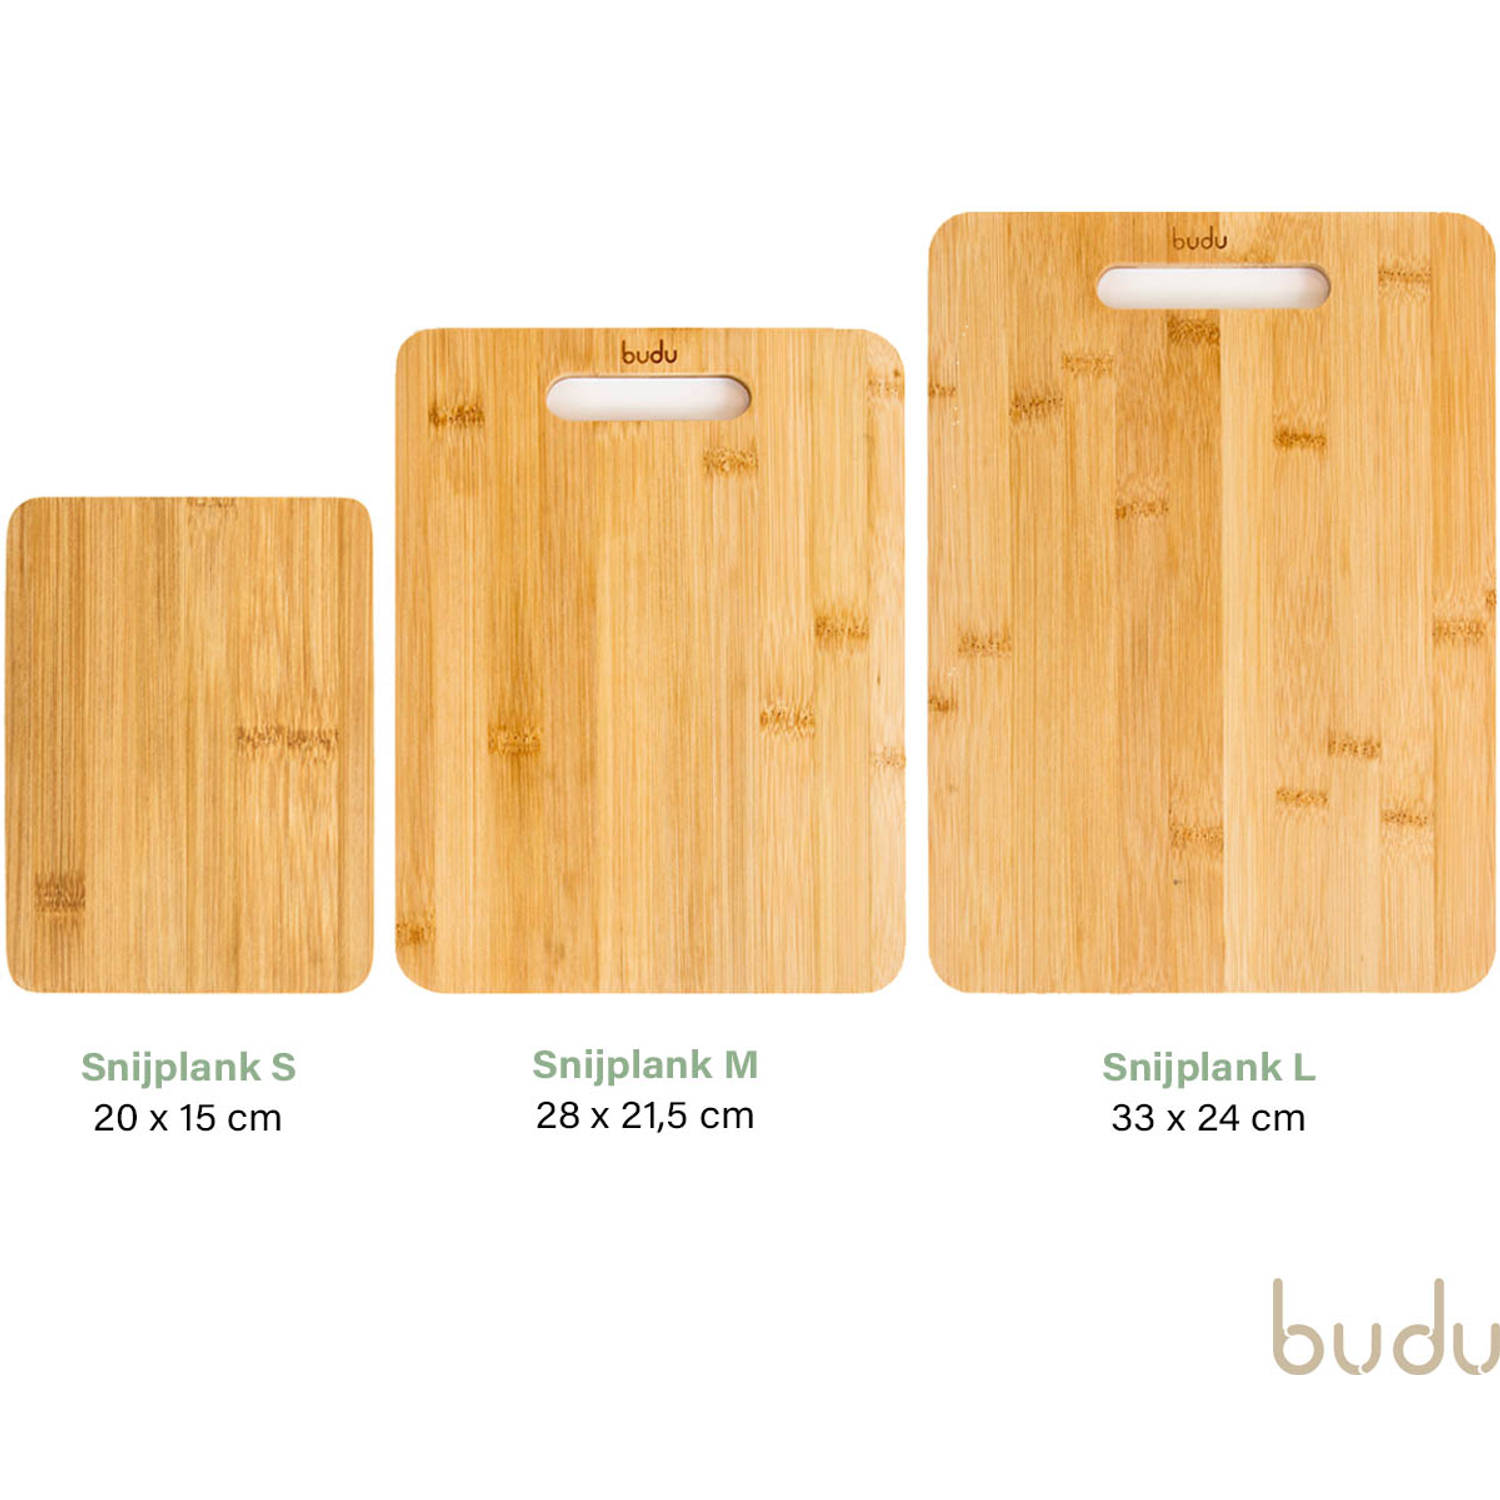 praktijk verdrievoudigen Installeren Budu Snijplankenset 3 stuks - Snijplanken bamboe - Snijplank hout -  Keukenplanken | Blokker